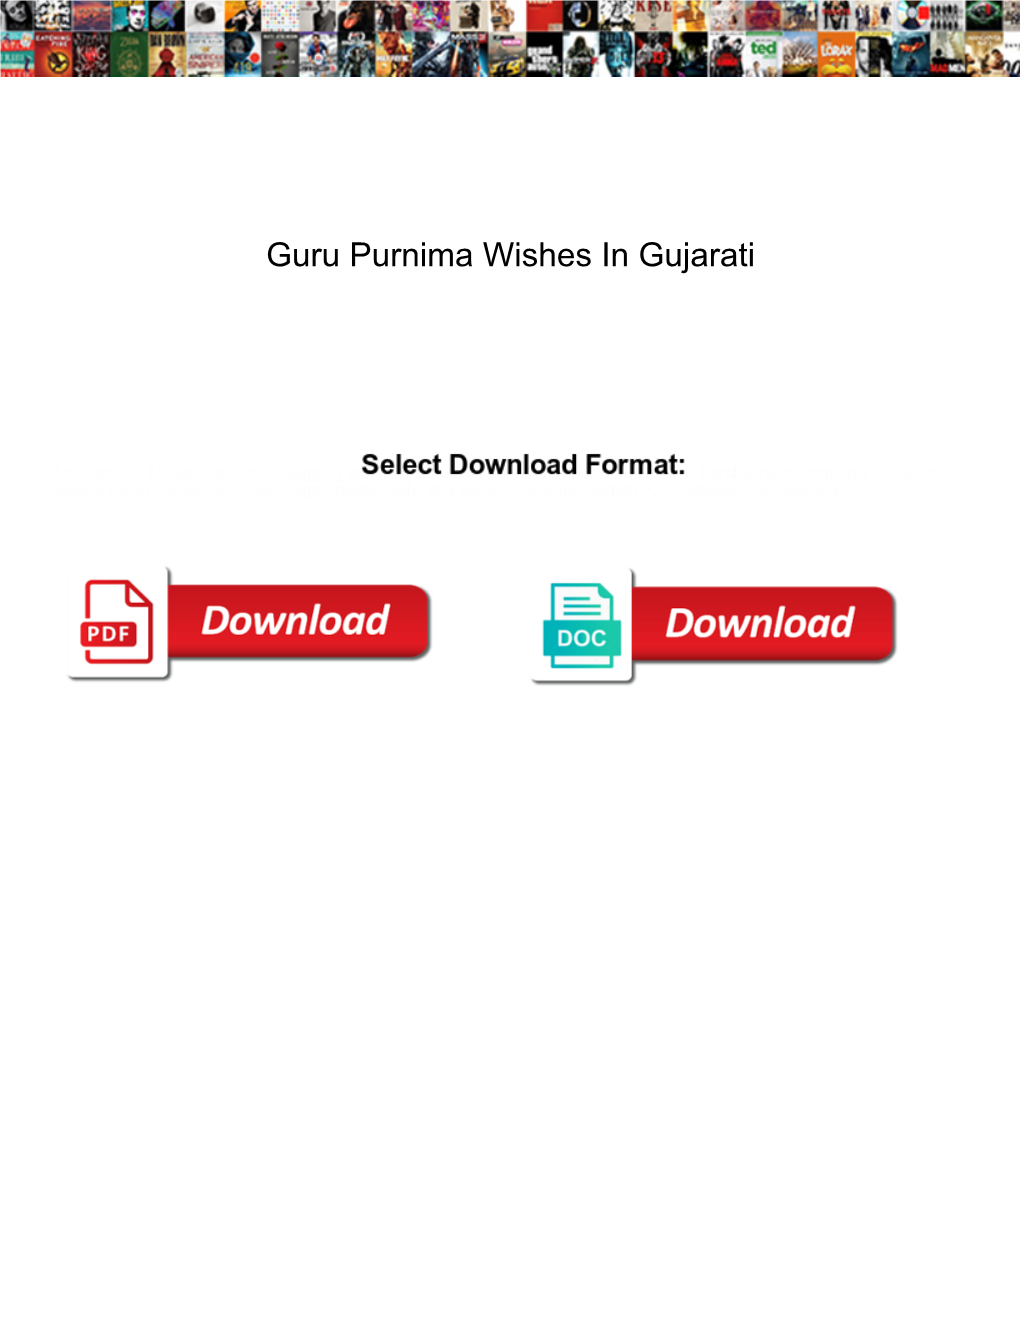 Guru-Purnima-Wishes-In-Gujarati.Pdf